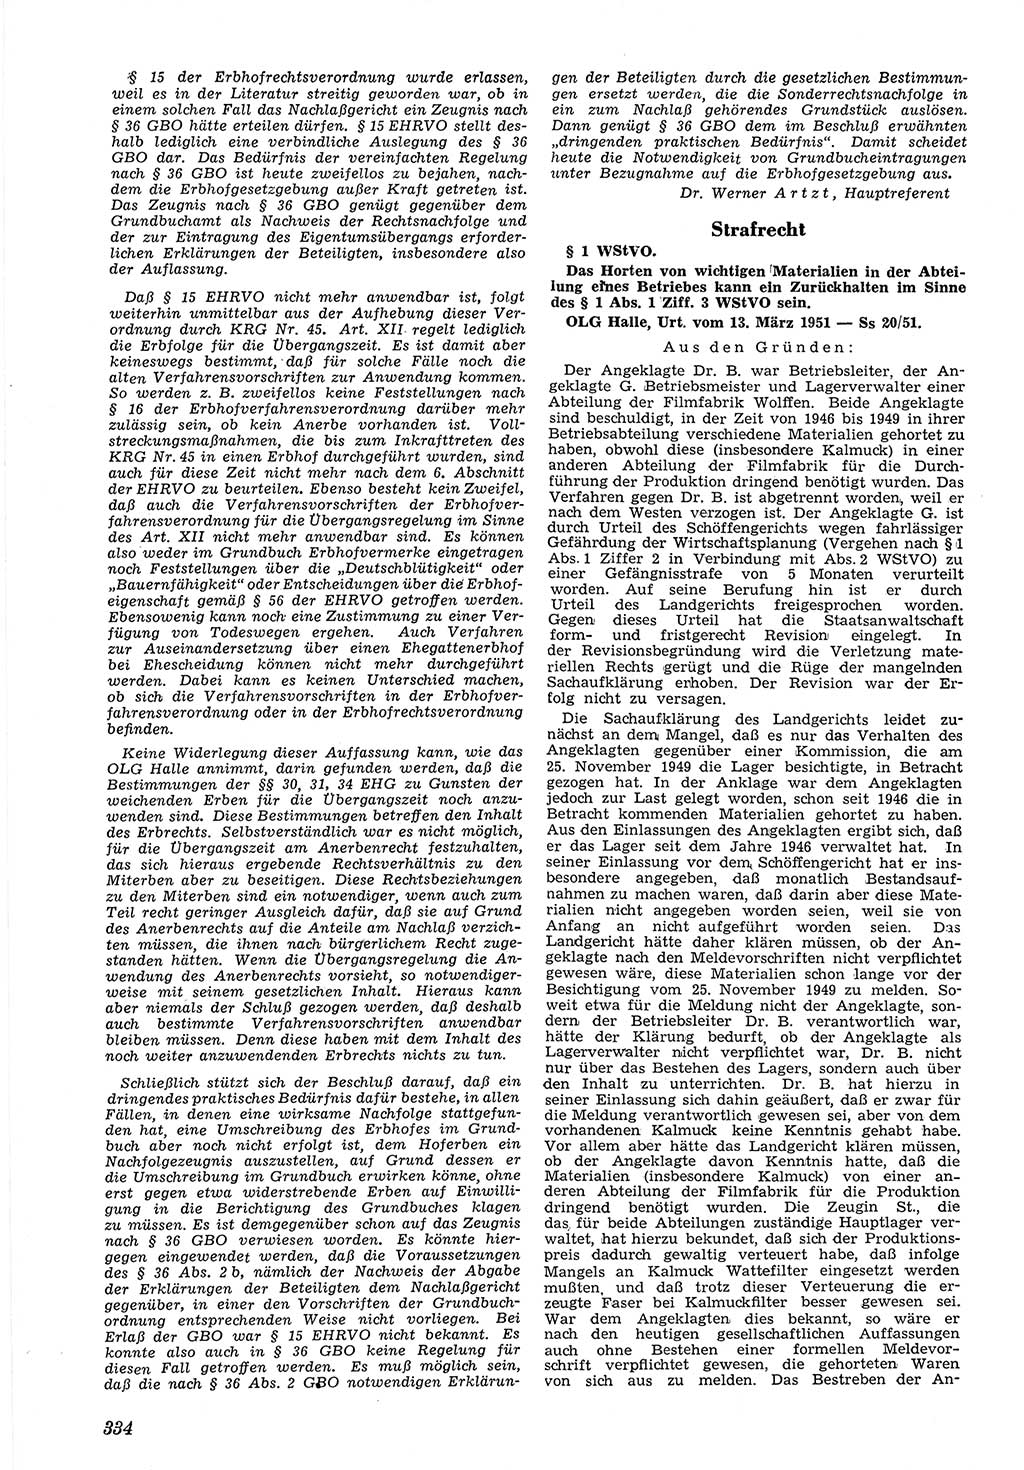 Neue Justiz (NJ), Zeitschrift für Recht und Rechtswissenschaft [Deutsche Demokratische Republik (DDR)], 5. Jahrgang 1951, Seite 334 (NJ DDR 1951, S. 334)